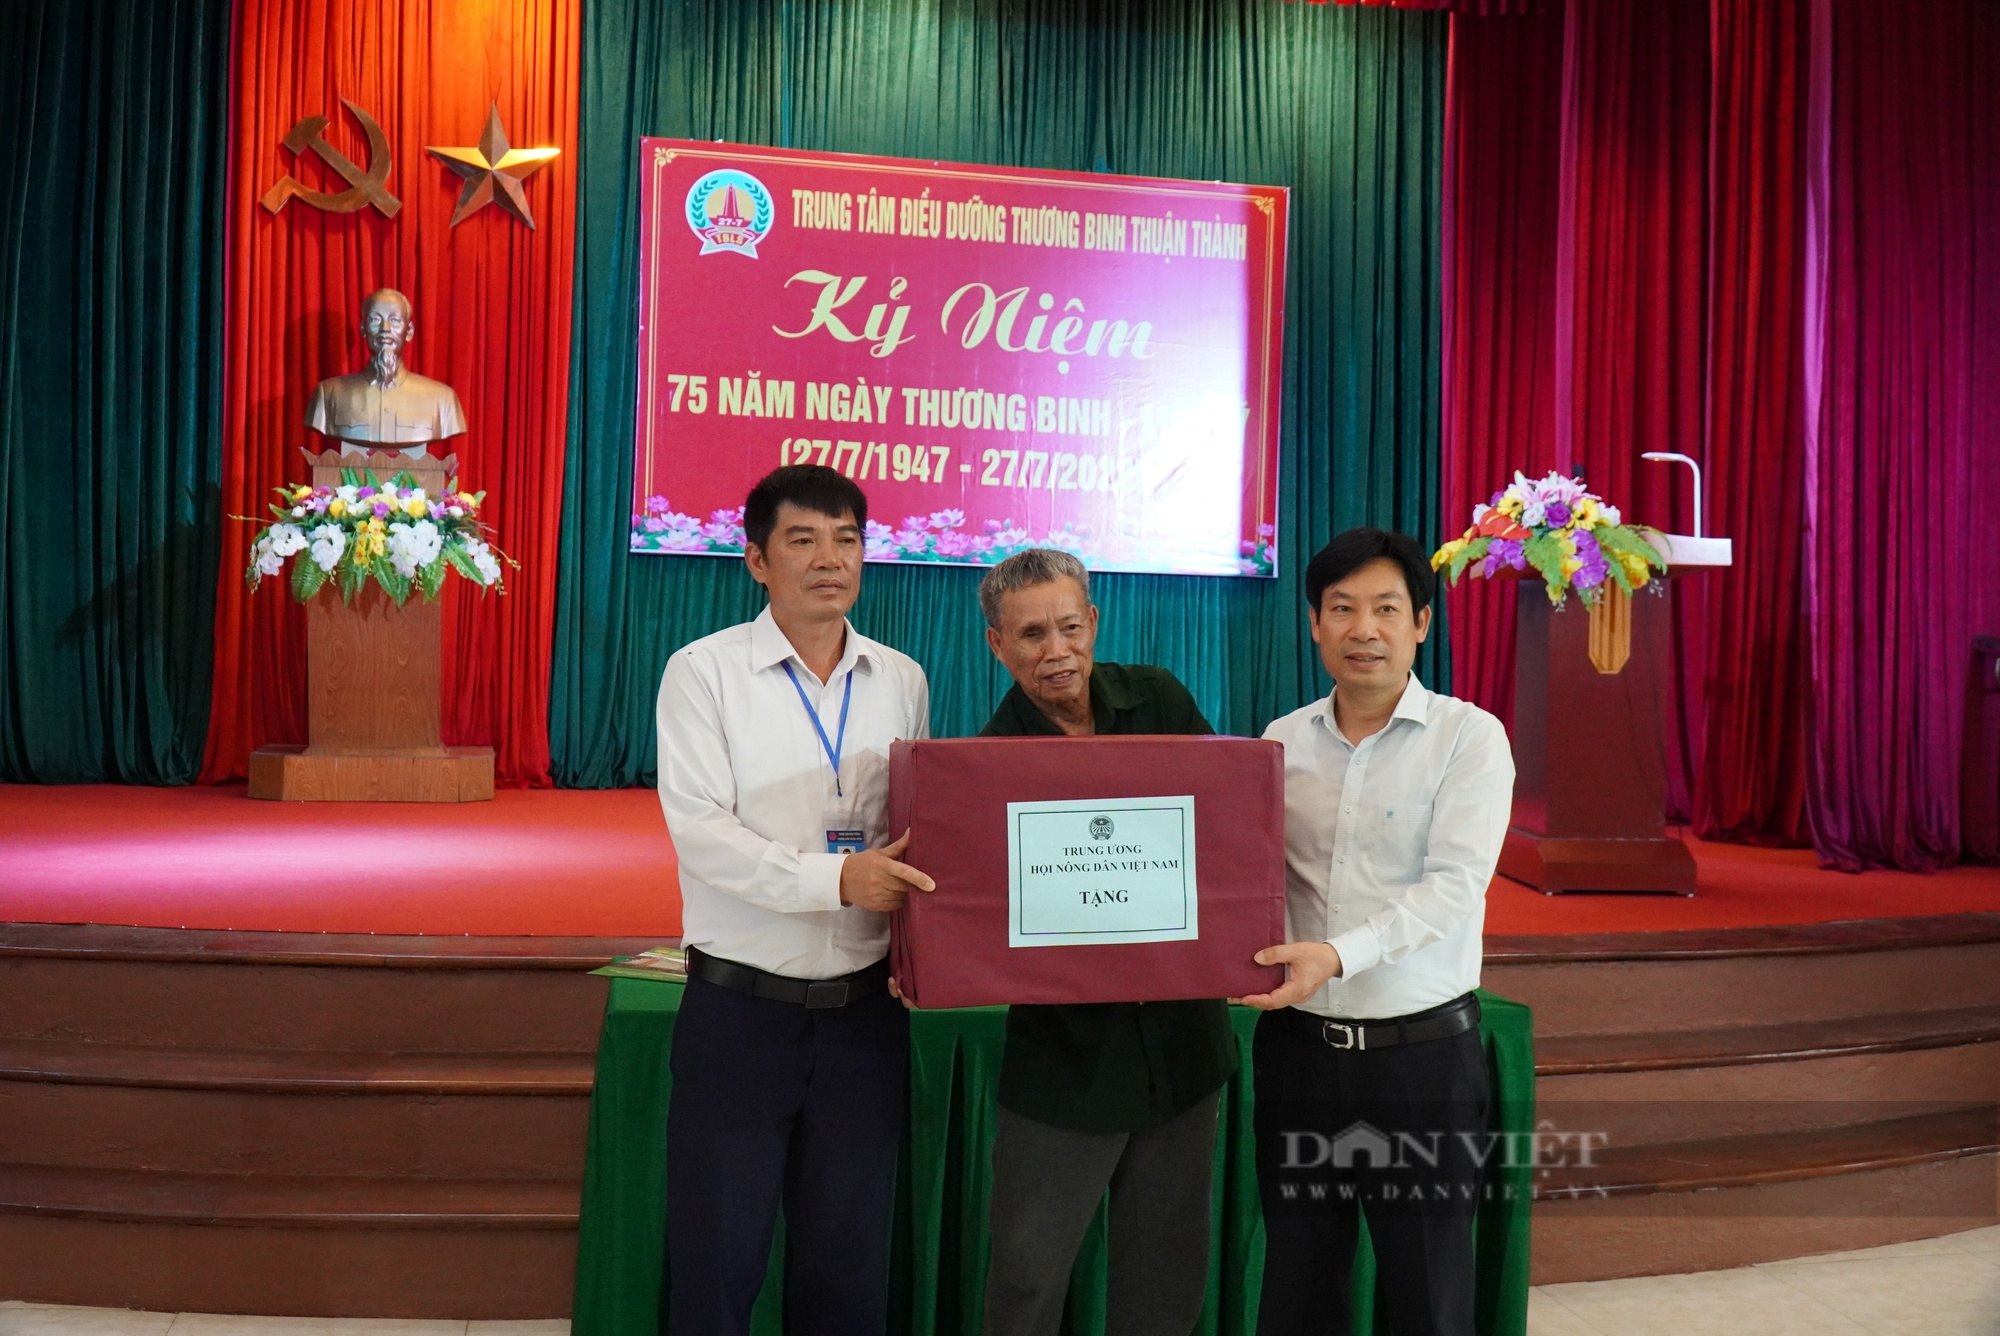 Phó Chủ tịch T.Ư Hội NDVN Nguyễn Xuân Định thăm, tặng quà Trung tâm Điều dưỡng thương binh Thuận Thành - Ảnh 1.